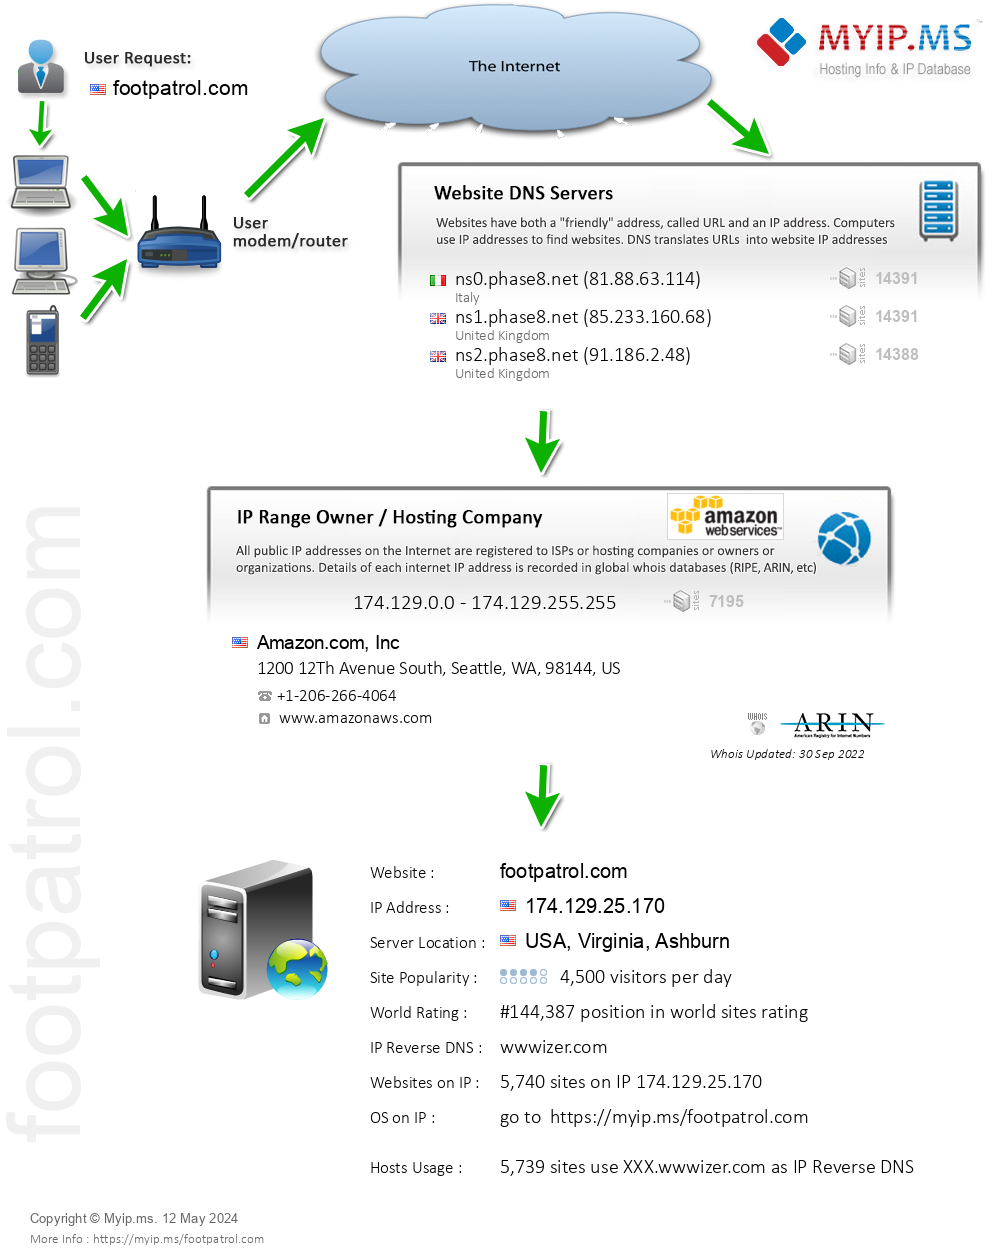 Footpatrol.com - Website Hosting Visual IP Diagram